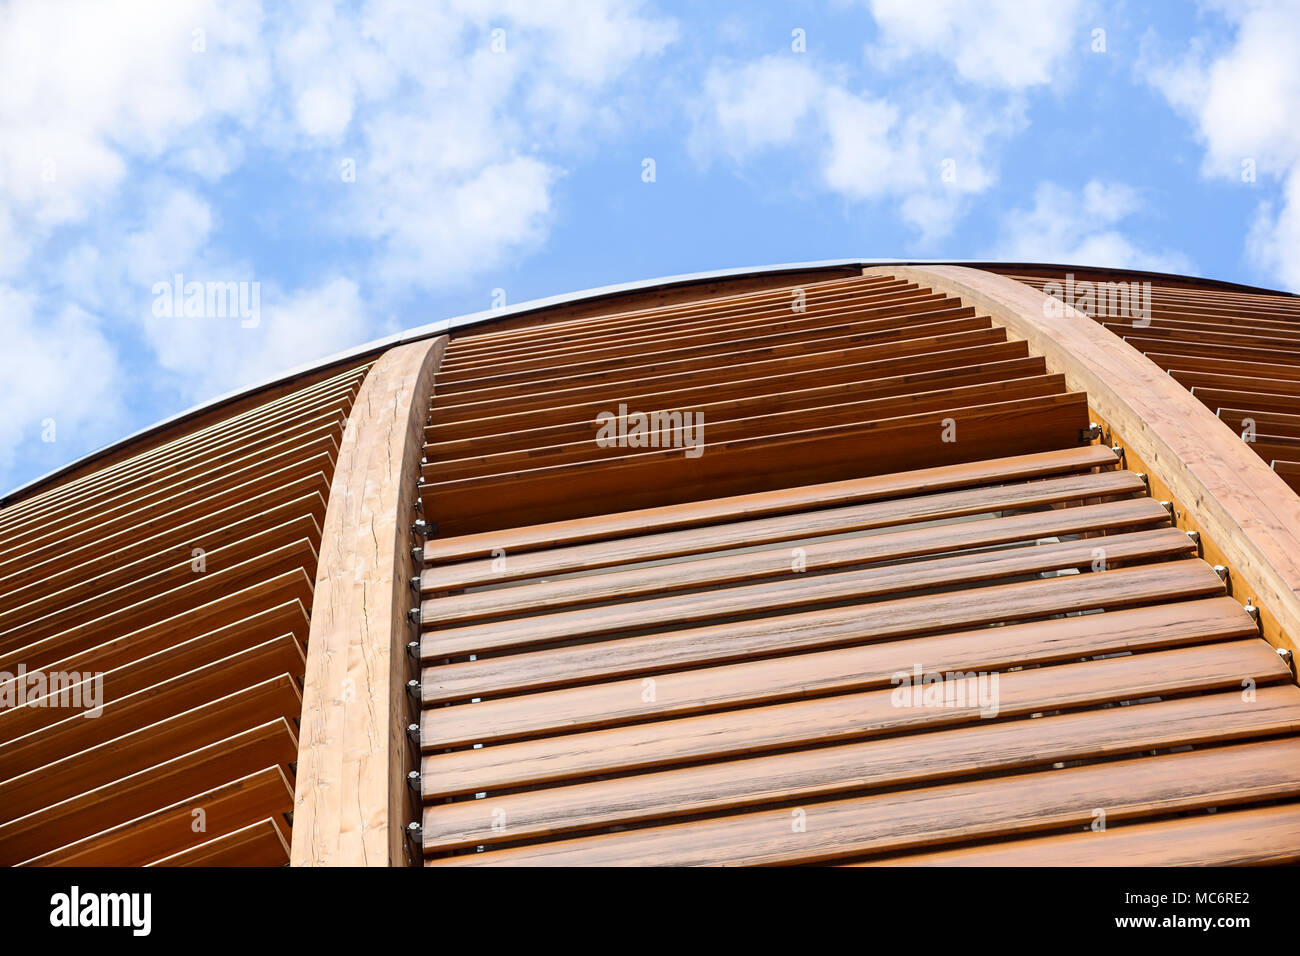 Mailand, Italien, 22. Juni 2017: Kuppeldach des Turms. Eine hölzerne Kuppel detail. Natürliche Materialien wie Holz zum Einsatz meoderni architektonischen Gebäuden zu erstellen Stockfoto